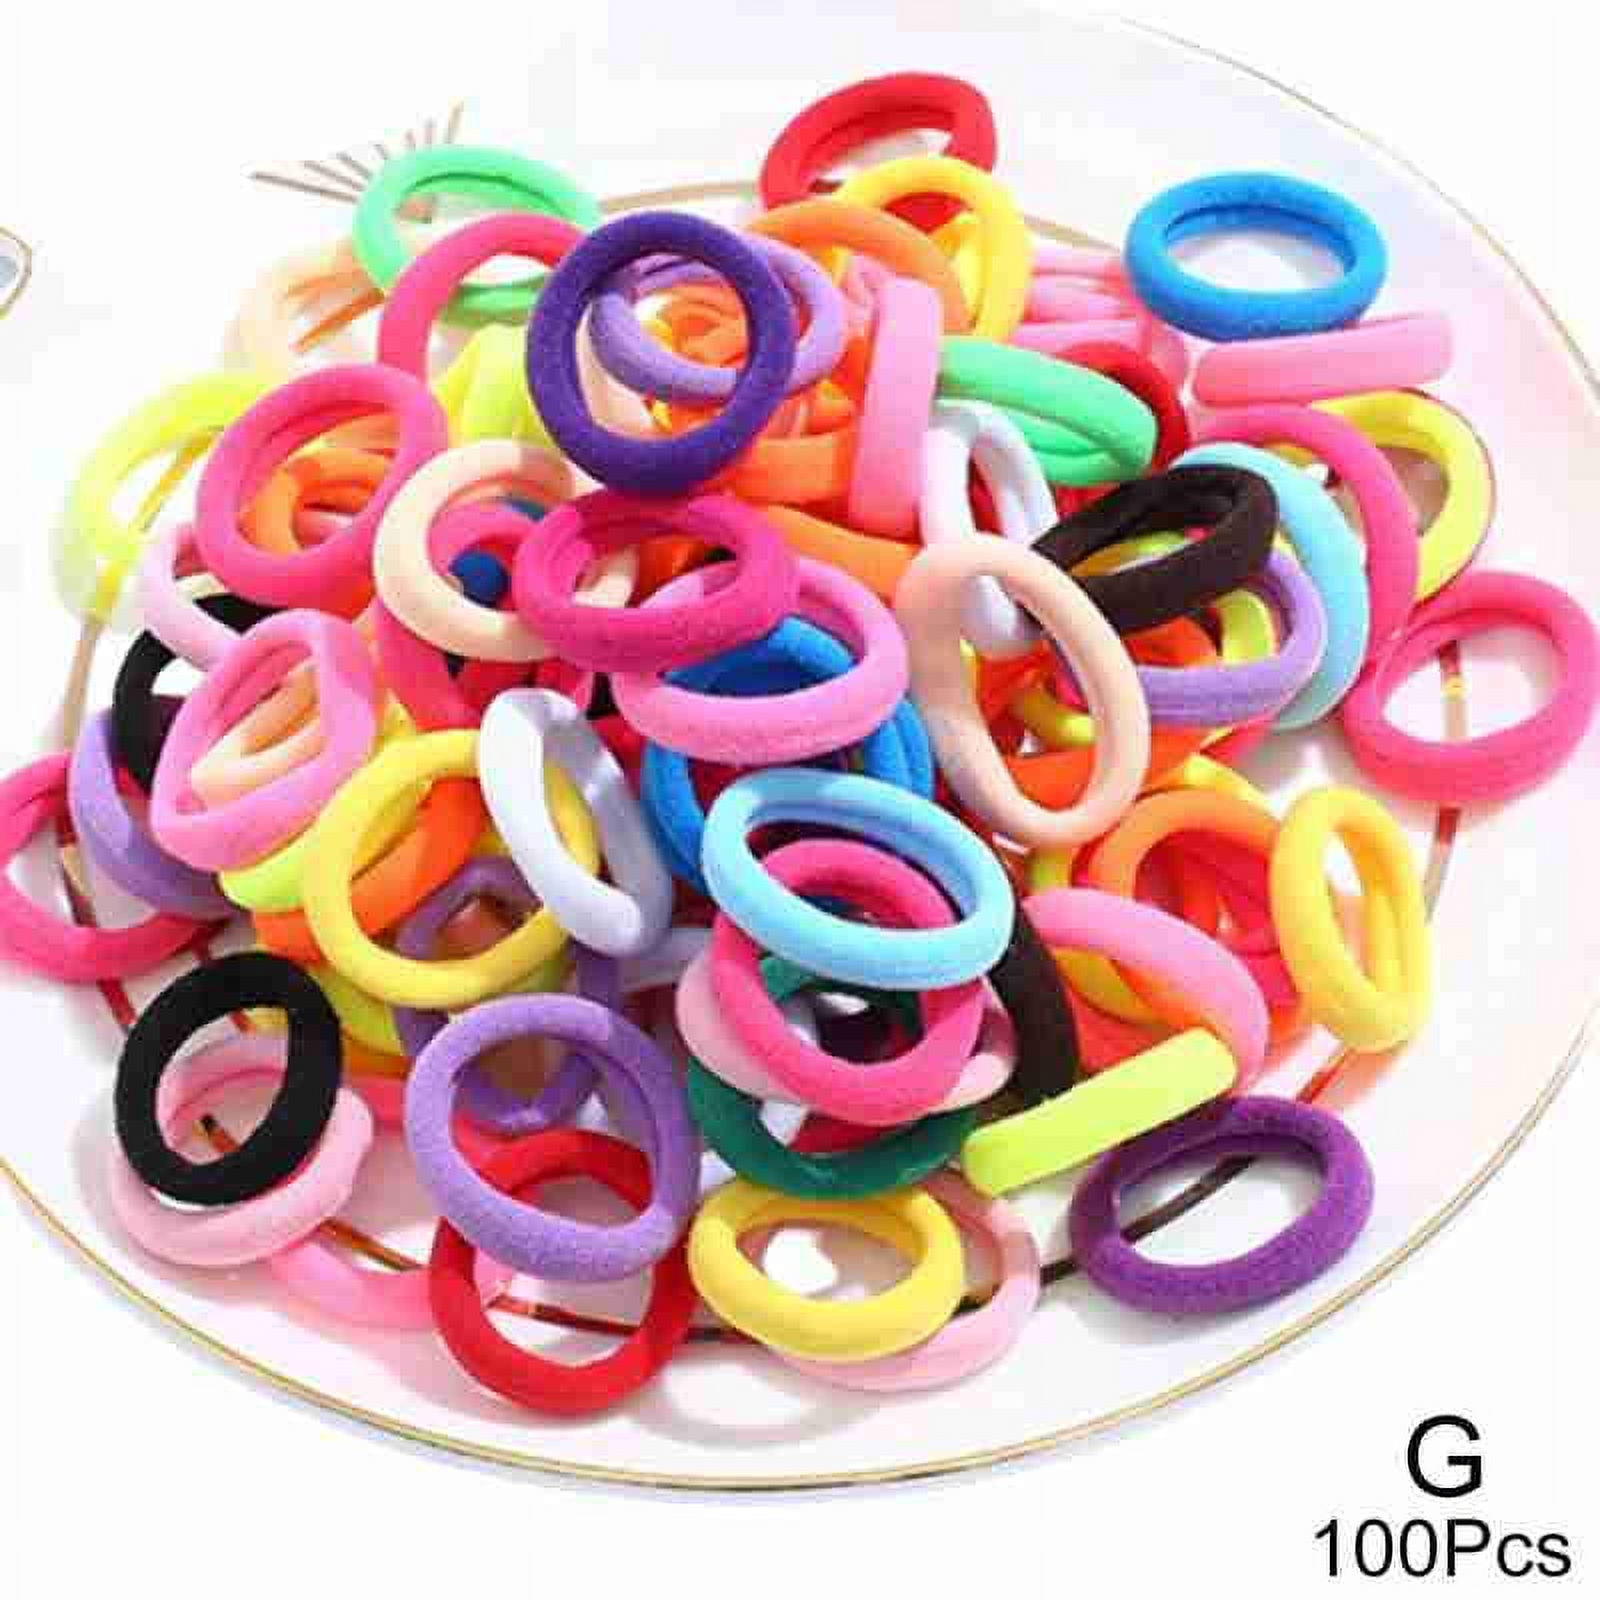 100 Pcs Colorful Rubber Bands